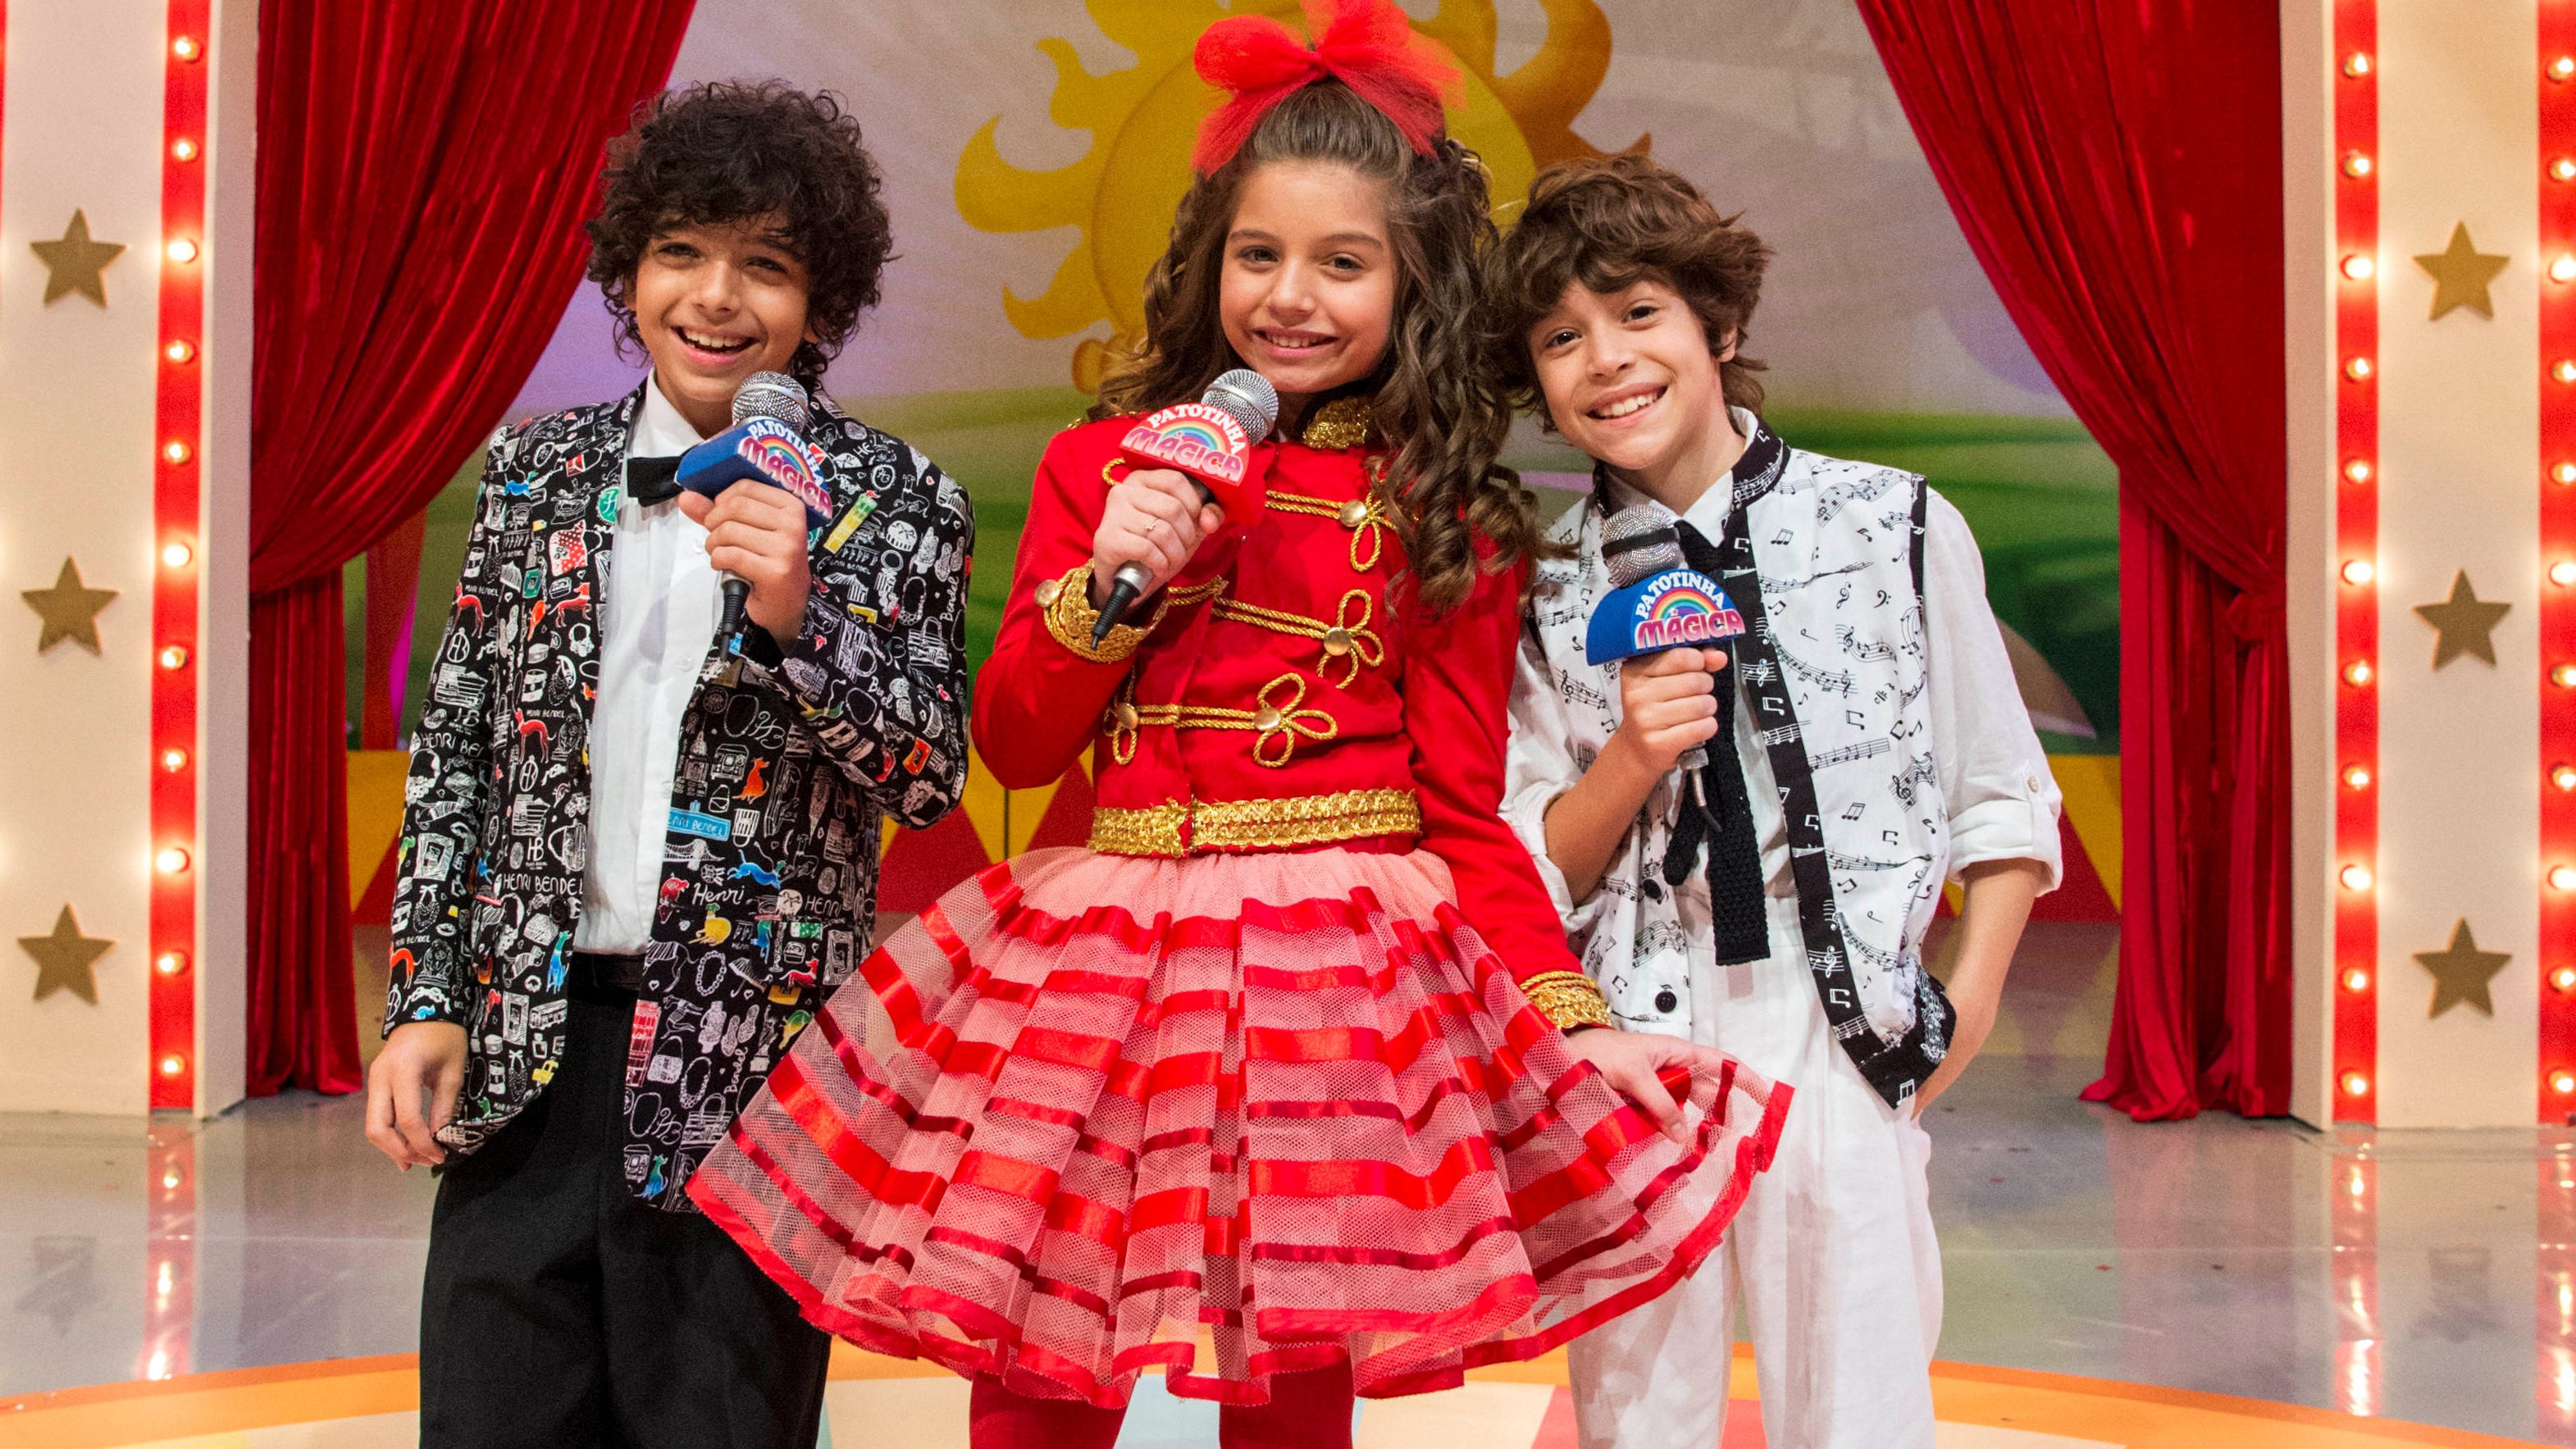 A Patotinha Mágica de Verão 90 - João (João Bravo), Jerônimo (Diogo Caruso) e Manuzita (Melissa Nóbrega) se apresentando no programa infantil comandado pelo trio